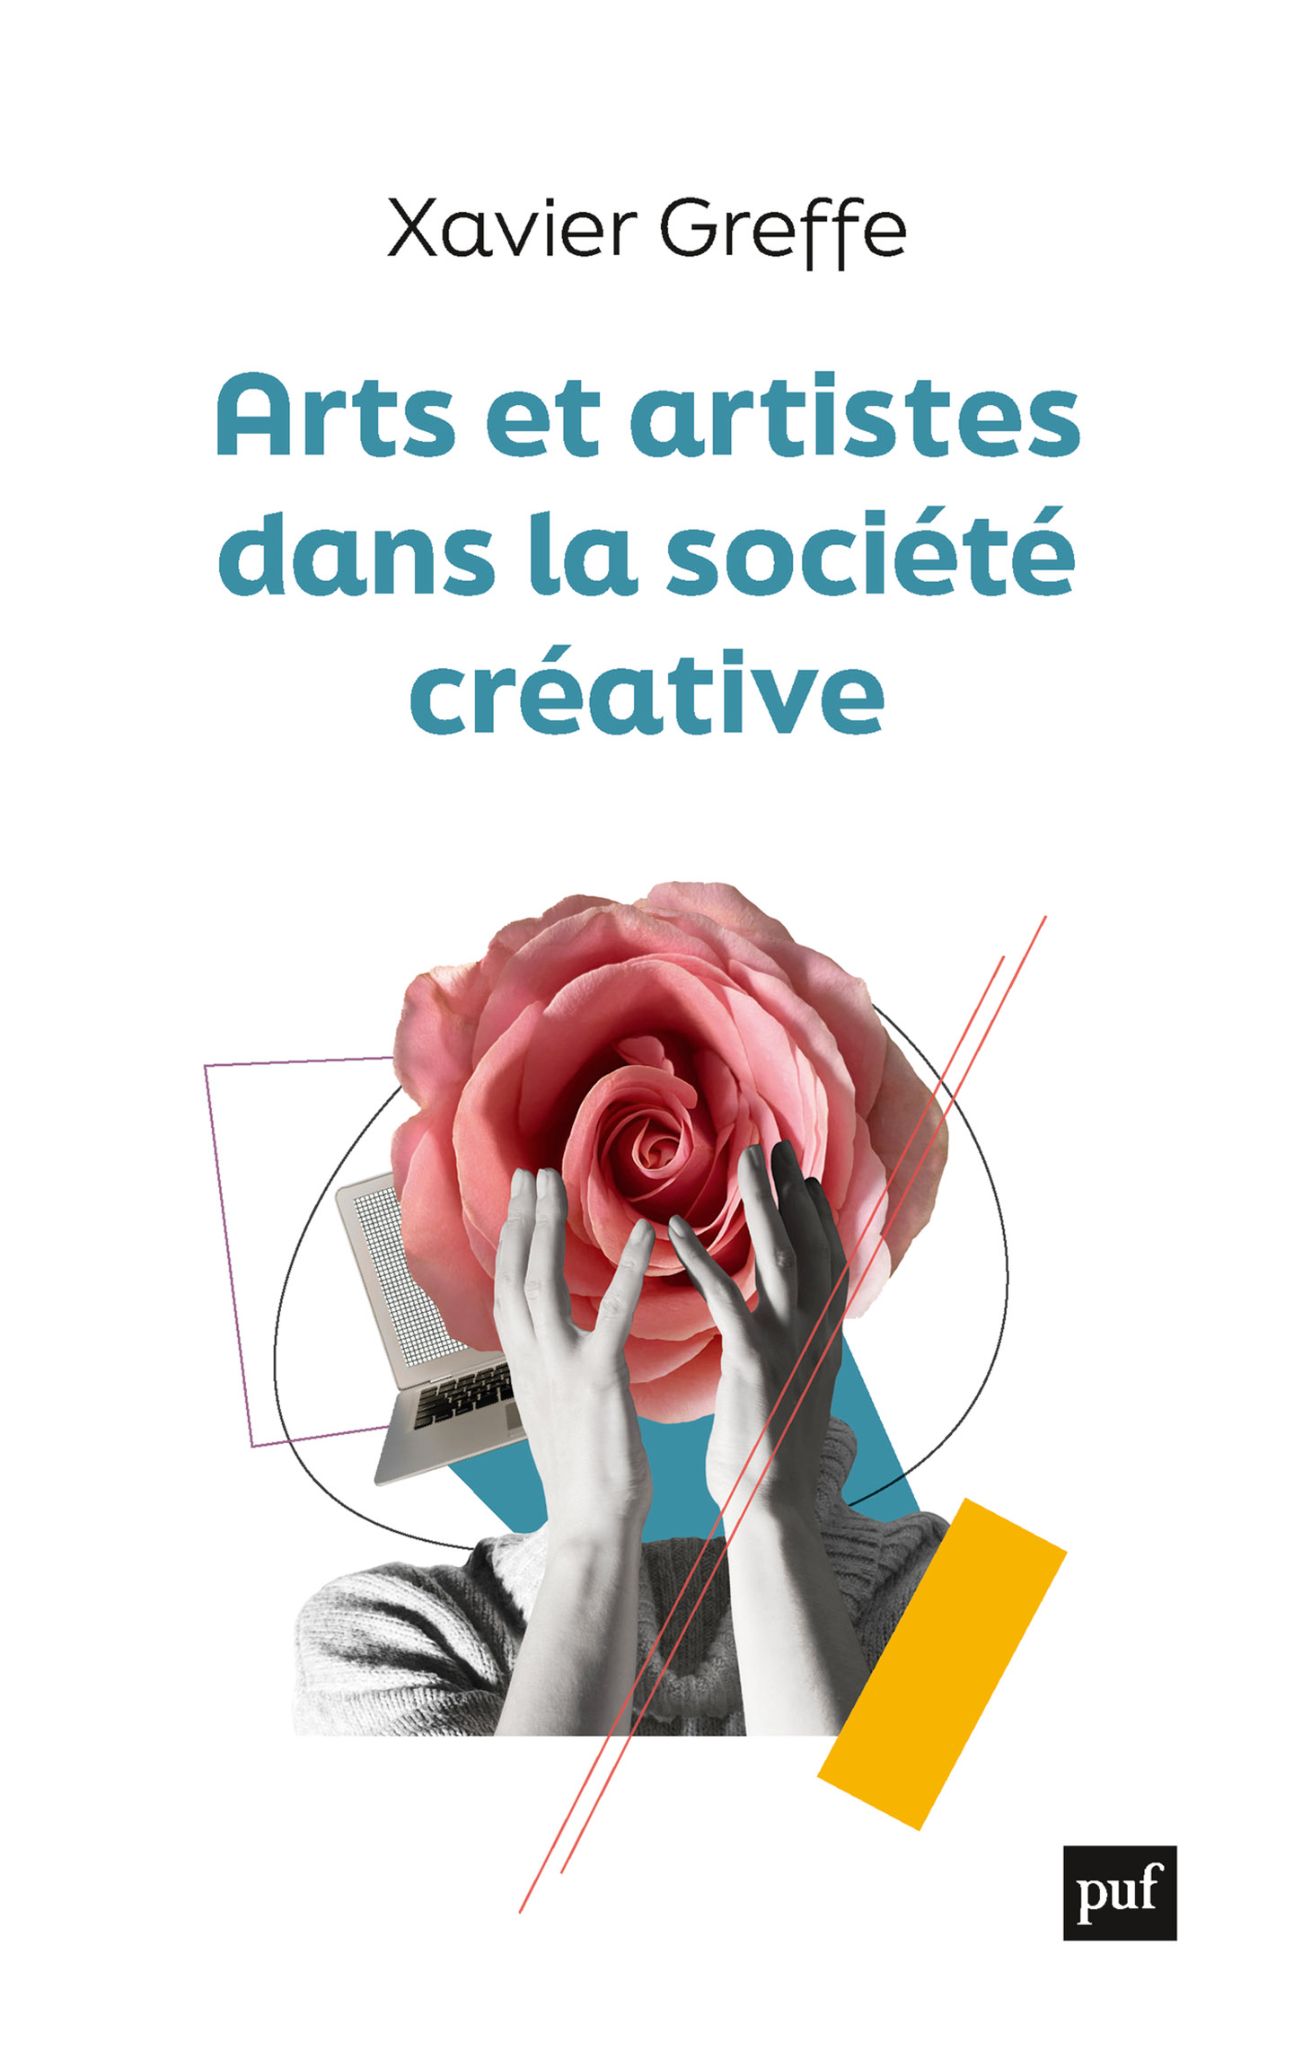 Xavier Greffe, Arts et artistes dans la société créative